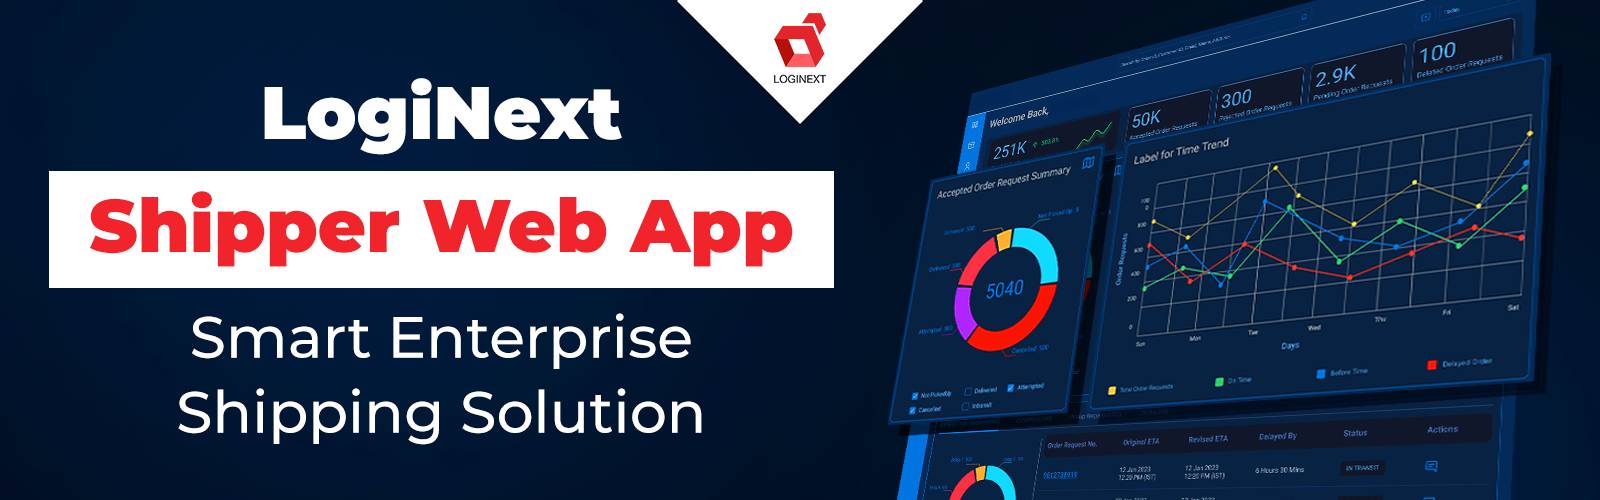 LogiNext Shipper Web App : solution d'expédition intelligente pour entreprise